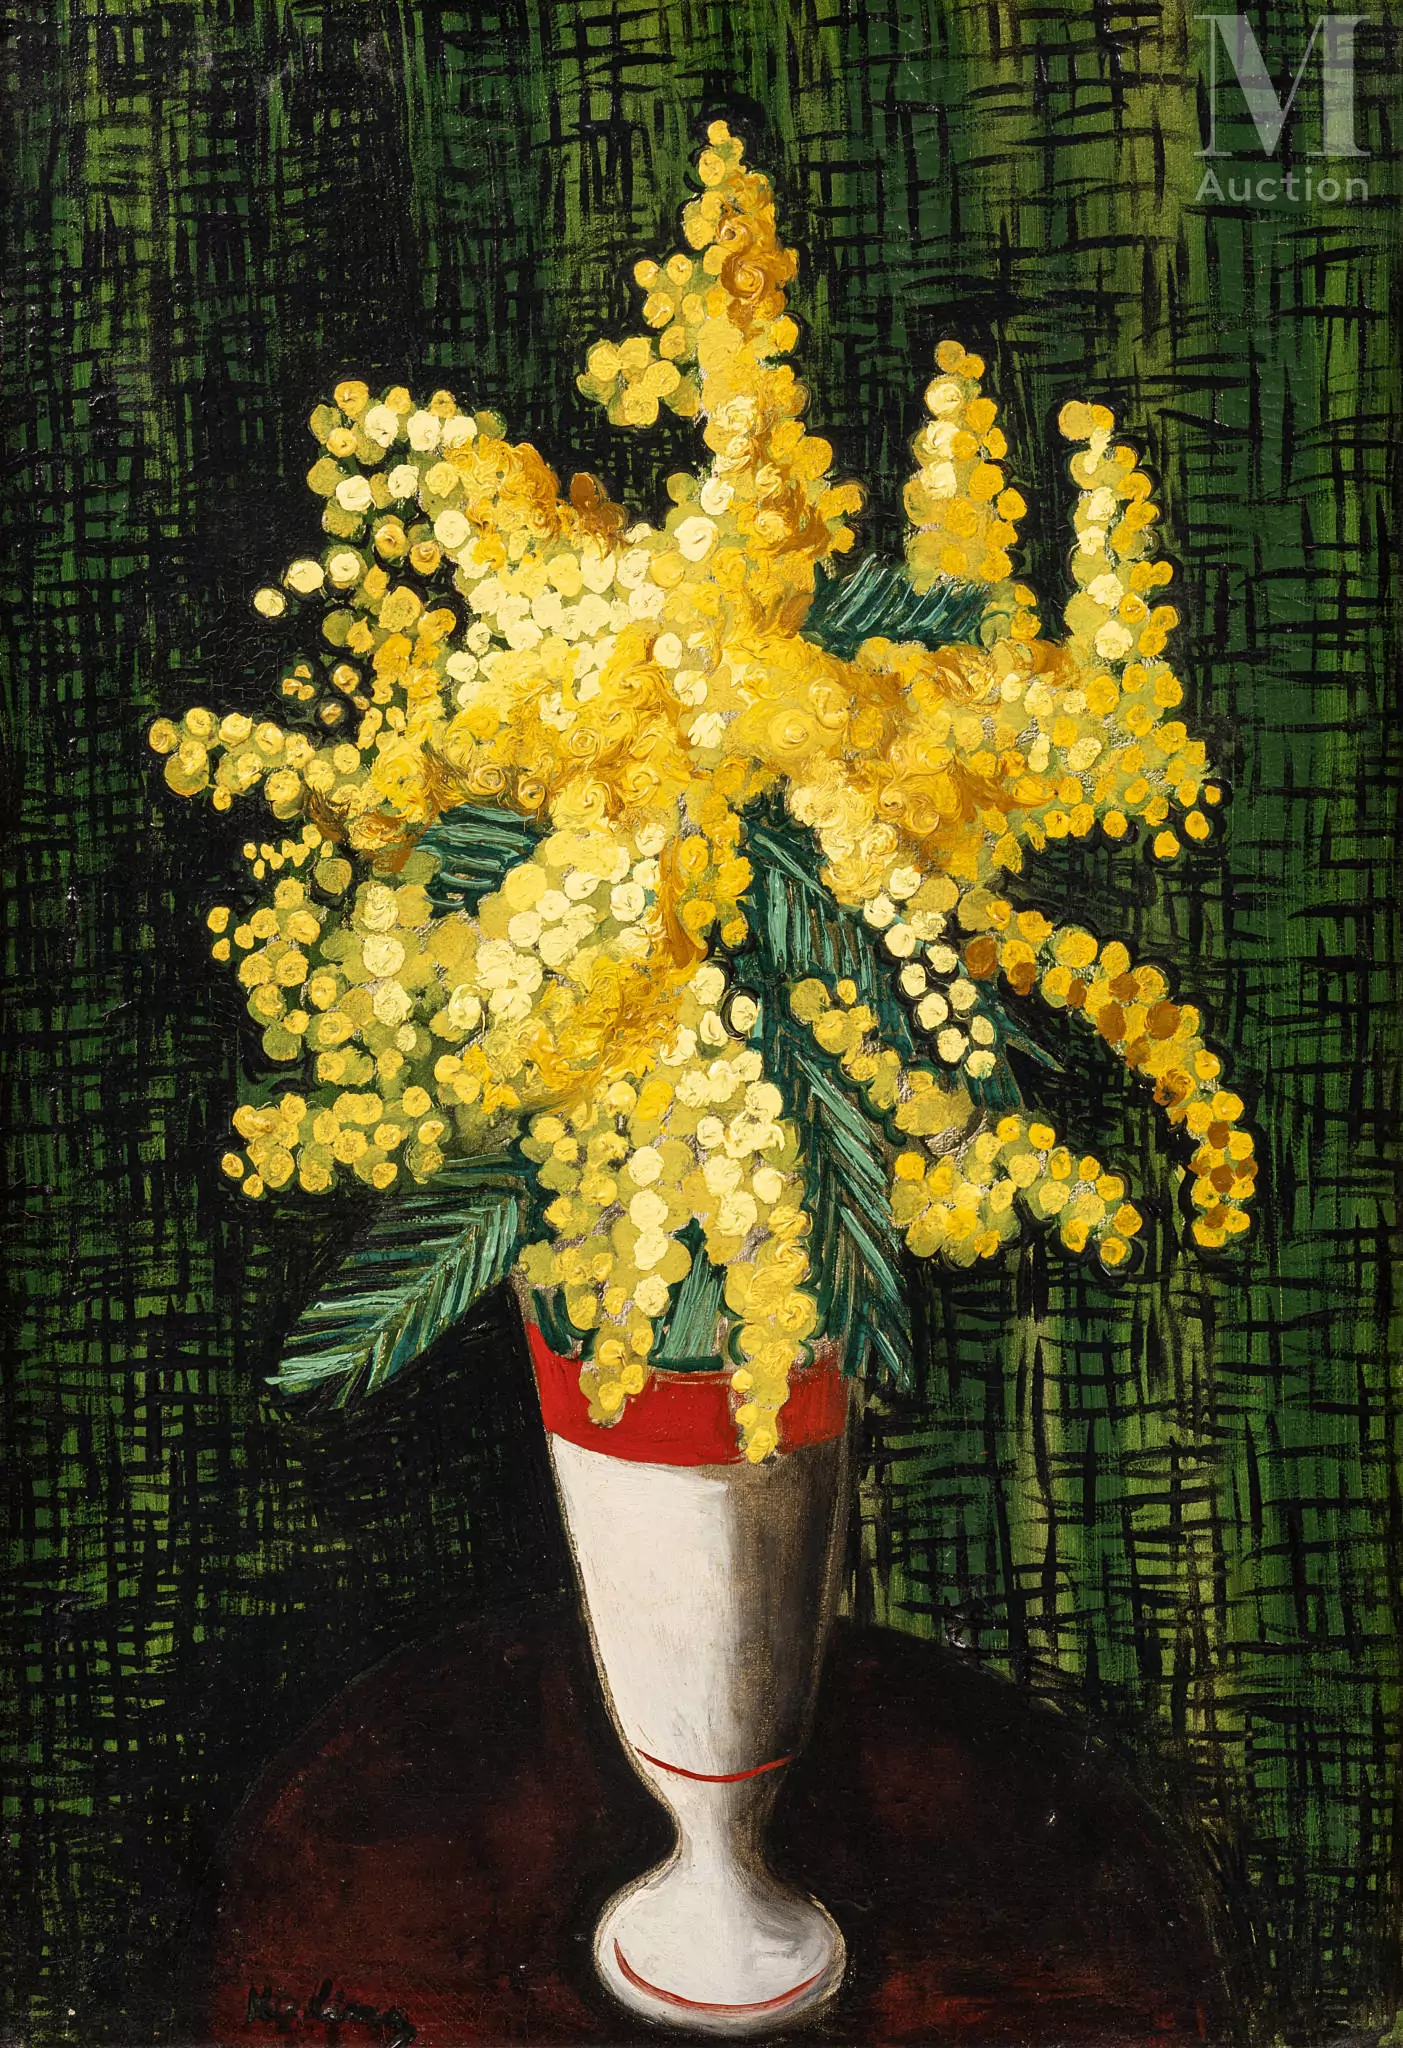 Moise KISLING (Cracovie 1891- Sanary sur mer 1953) Bouquet de mimosas Réalisé en 1925 Huile sur toile